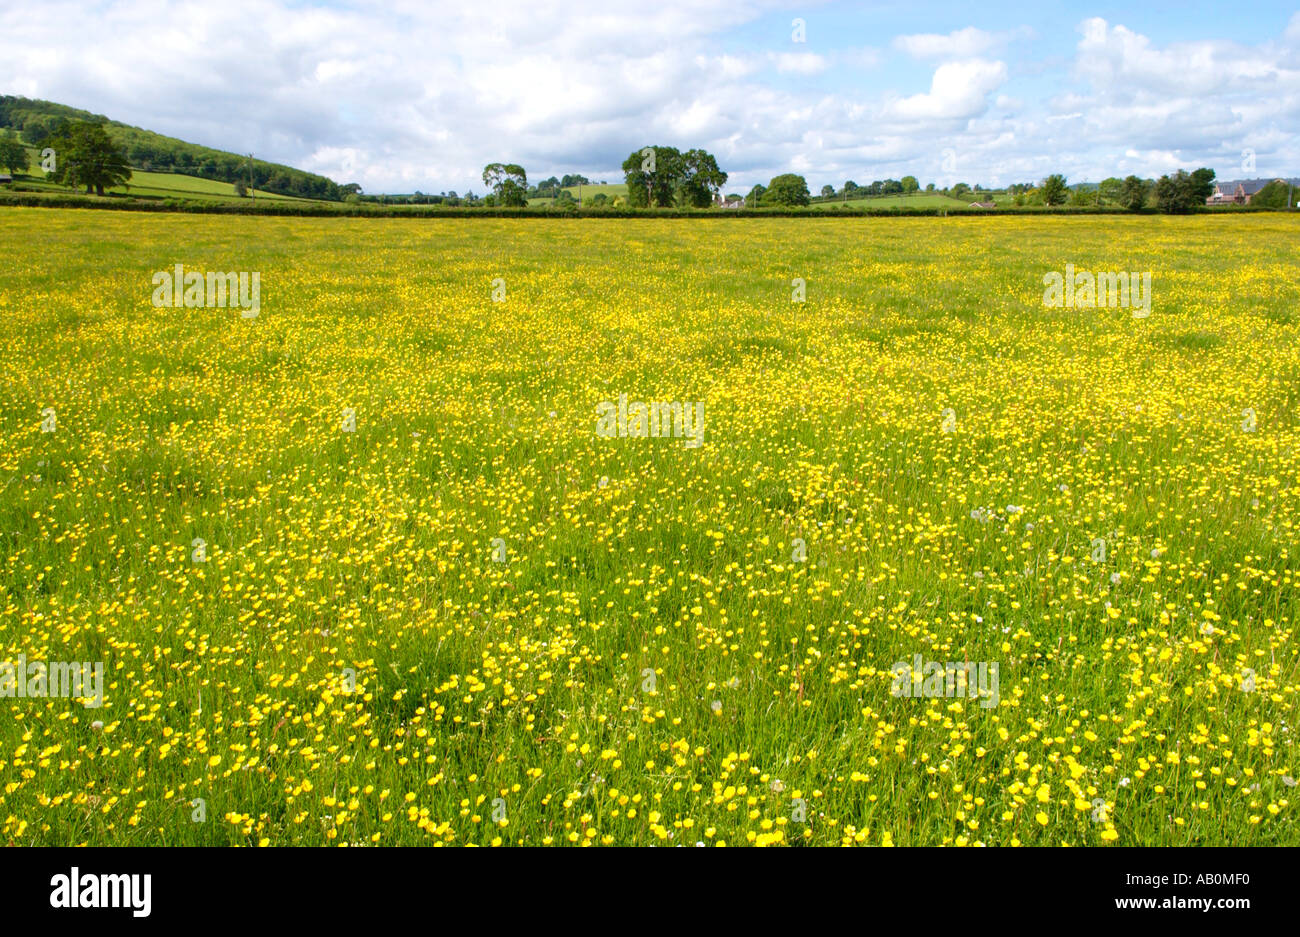 Vue sur les terres agricoles à renoncules jaunes au soleil d'été près de Hay on Wye Powys Pays de Galles UK Banque D'Images